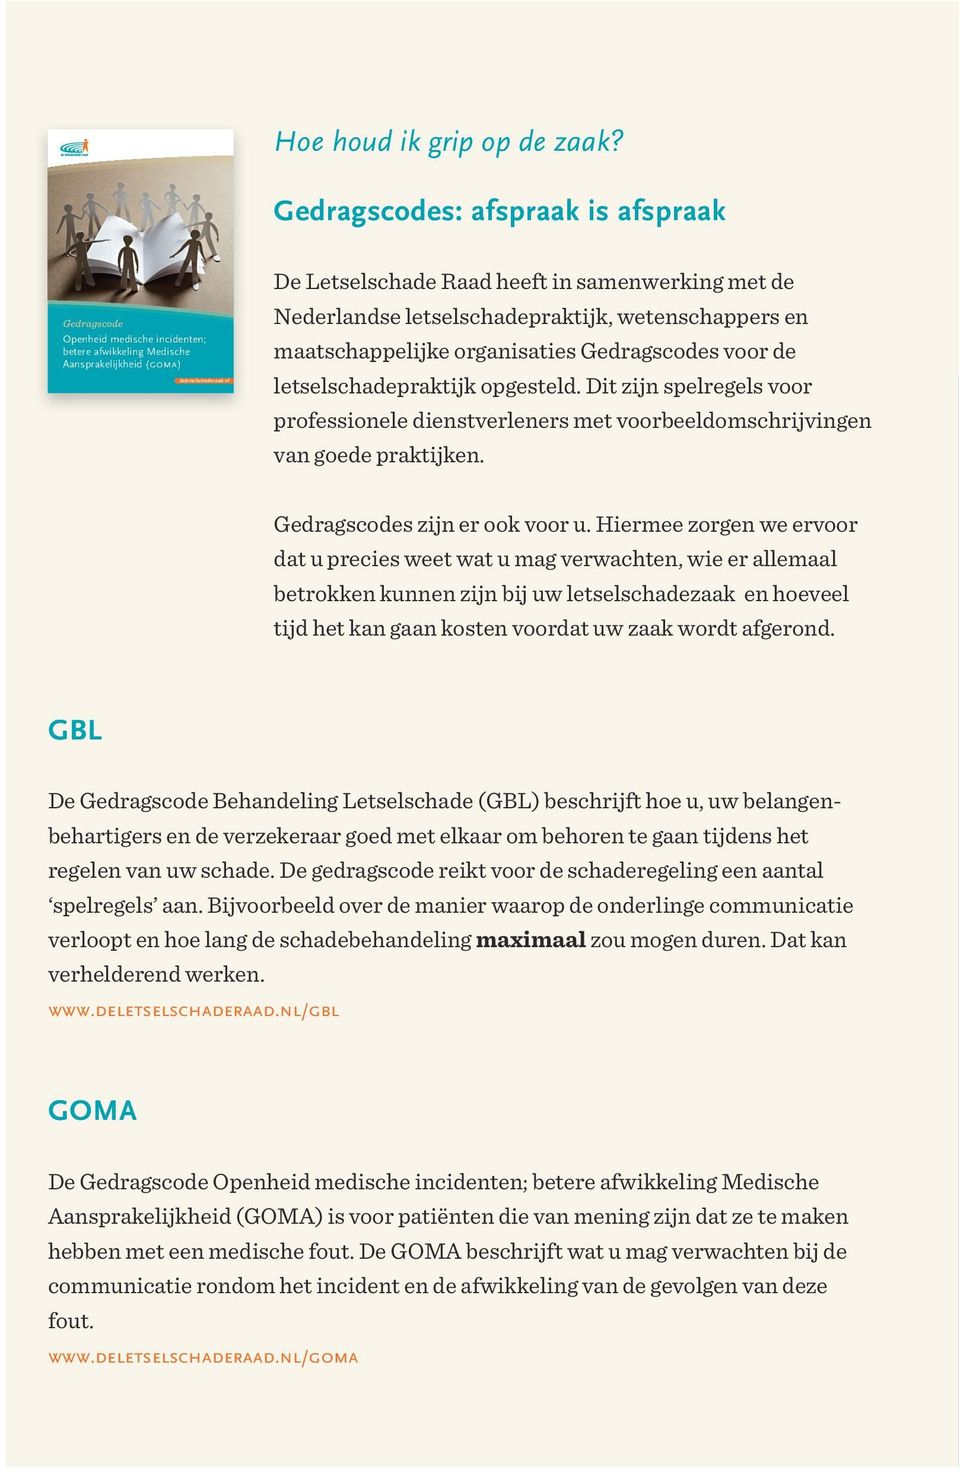 nl De Letselschade Raad heeft in samenwerking met de Nederlandse letselschadepraktijk, wetenschappers en maatschappelijke organisaties Gedragscodes voor de letselschadepraktijk opgesteld.